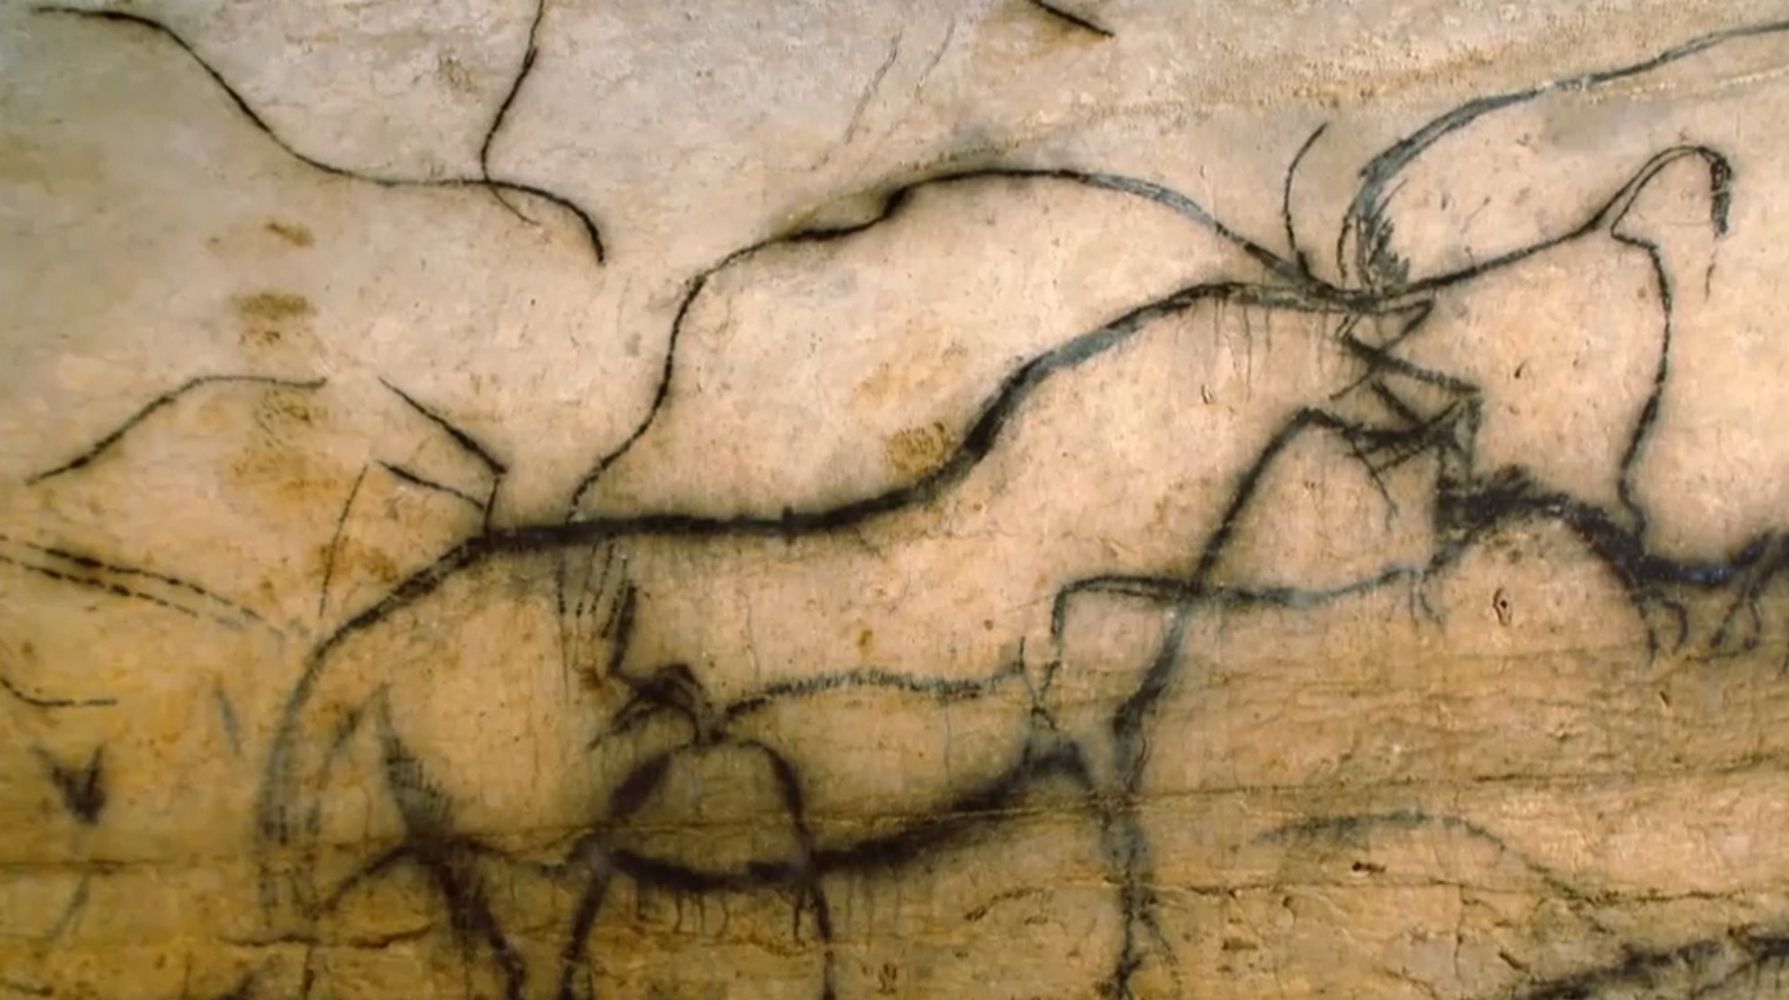 Viele der Zeichnungen der Jagdtiere in der Höhle Pech Merle (Frankreich) sind von ein und demselben Künstler erstellt worden. In den Höhlen des Lot-Tals wurden auch Farbspuren gefunden, die 64.000 Jahre alt sind und daher nur von Neandertalern stammen können. Public Domain.